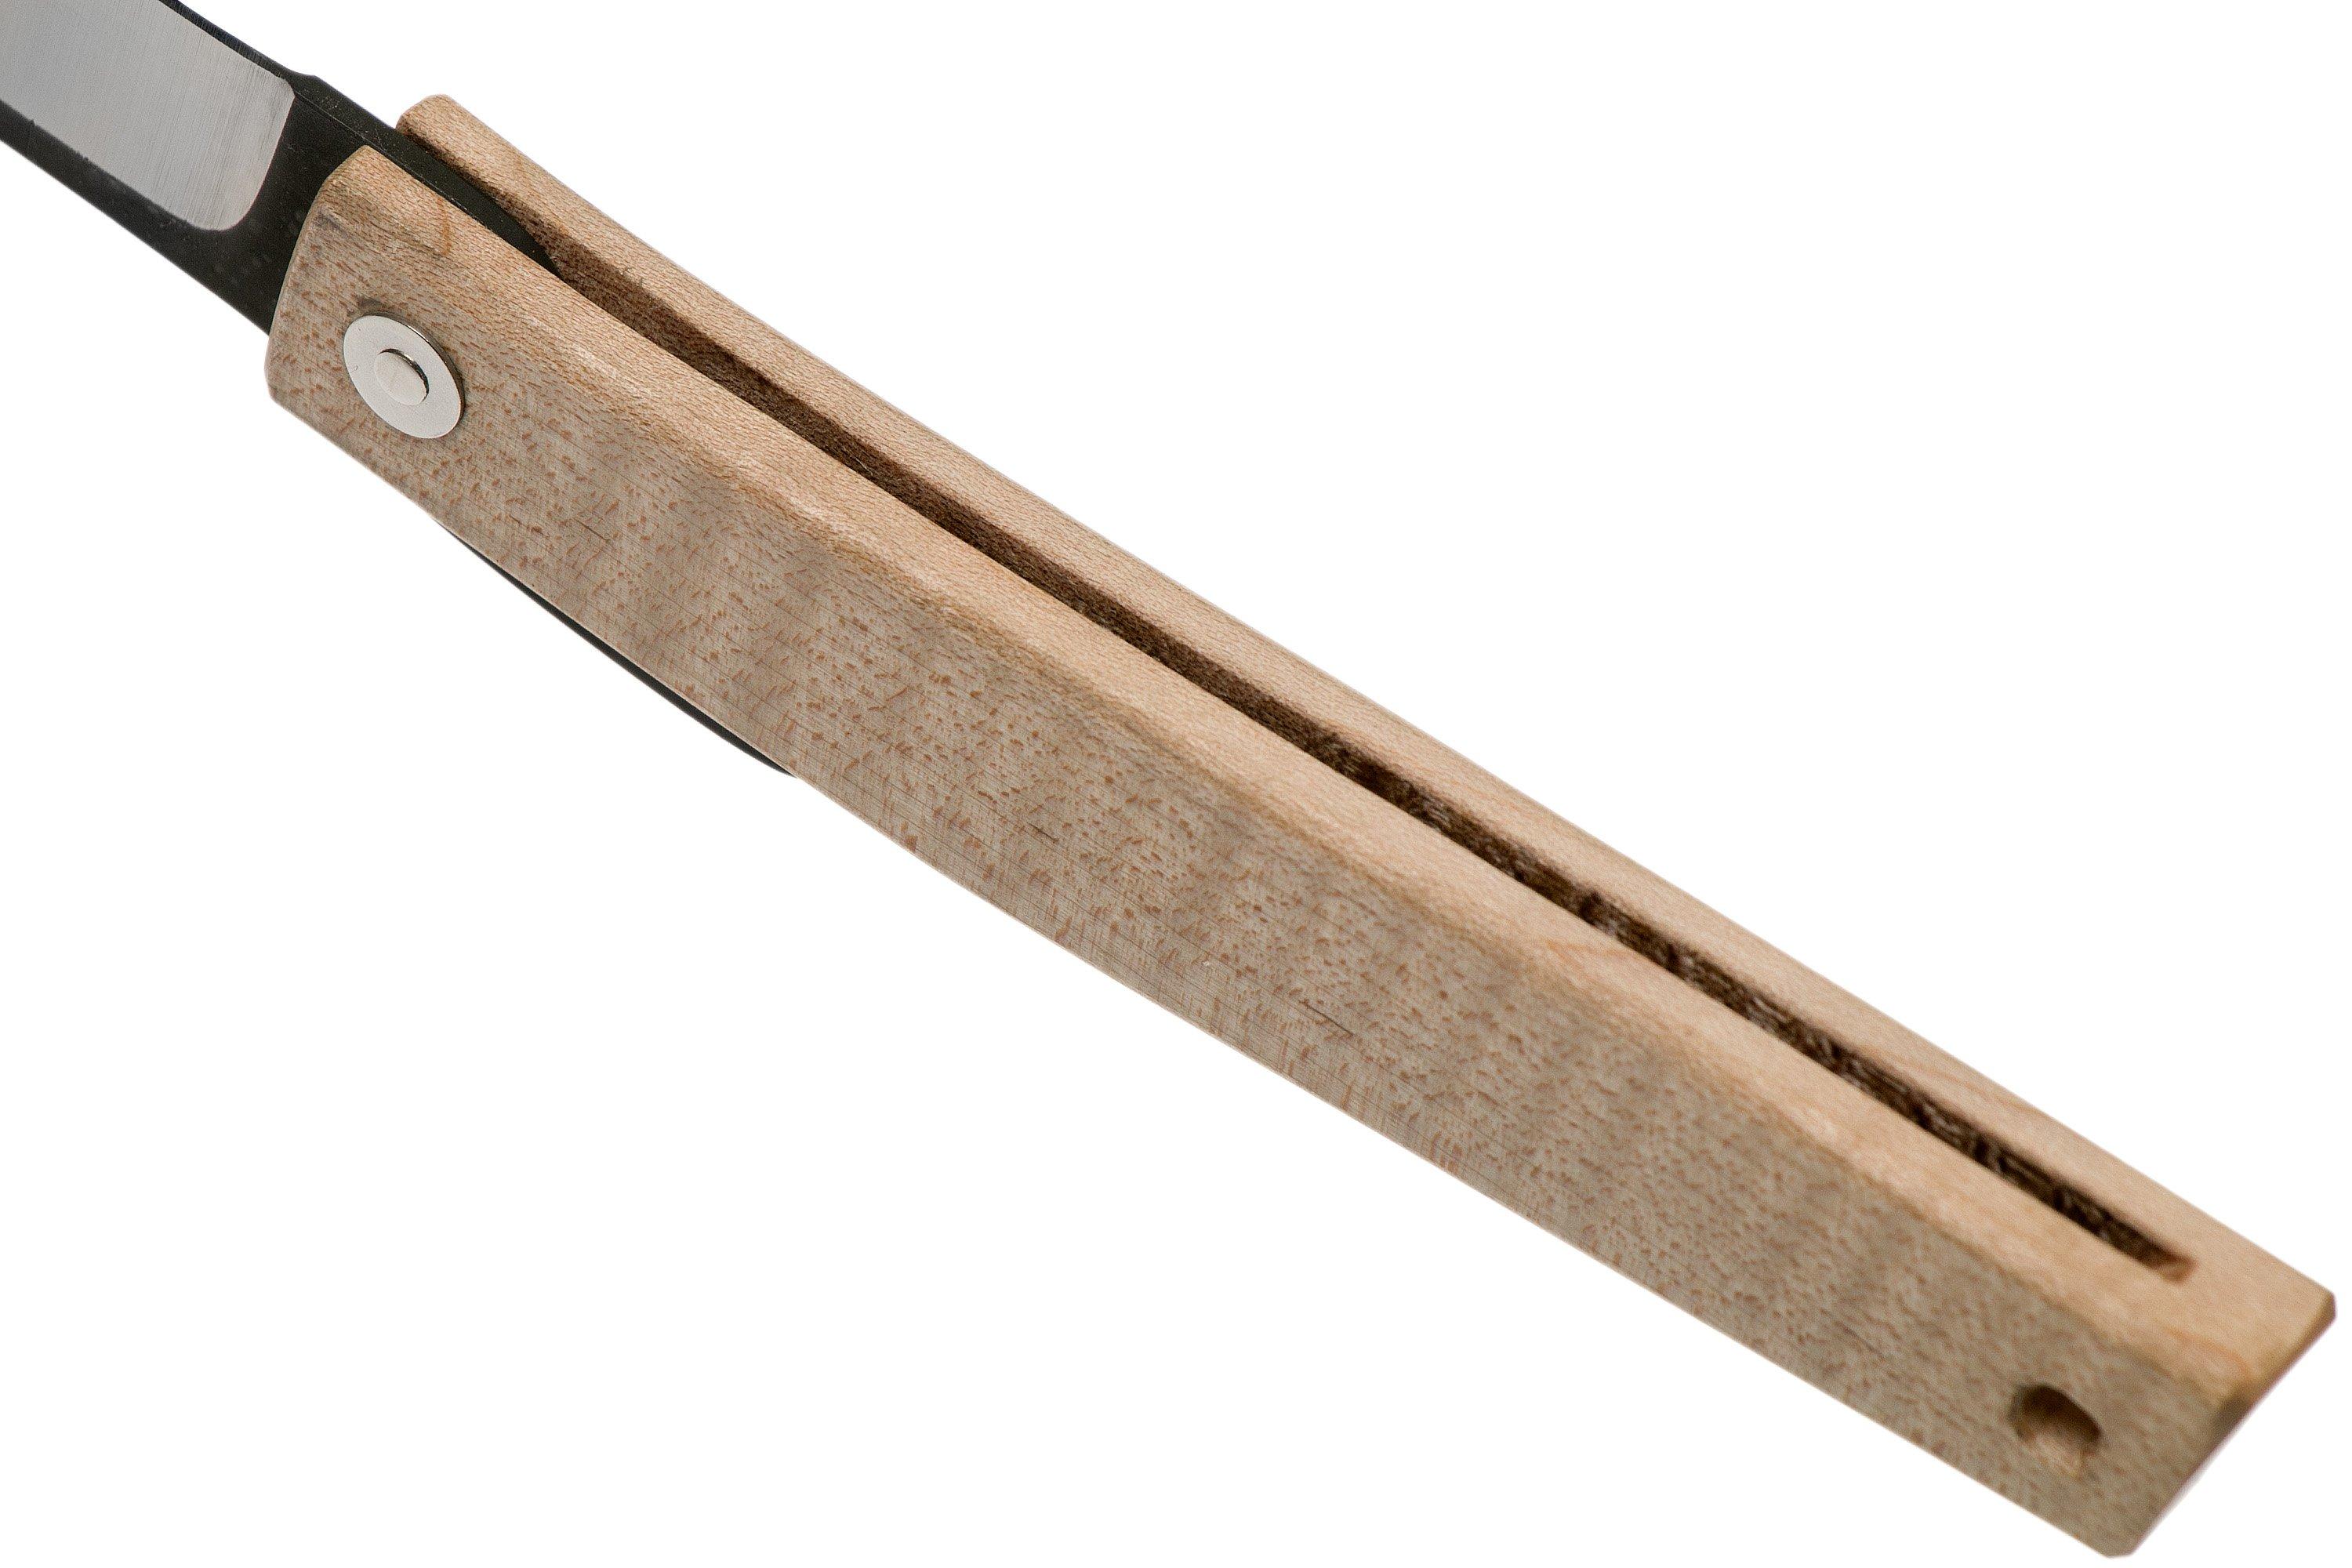 Ohta FK9 Higonokami-coltello da tasca, legno d'acero  Fare acquisti  vantaggiosamente su